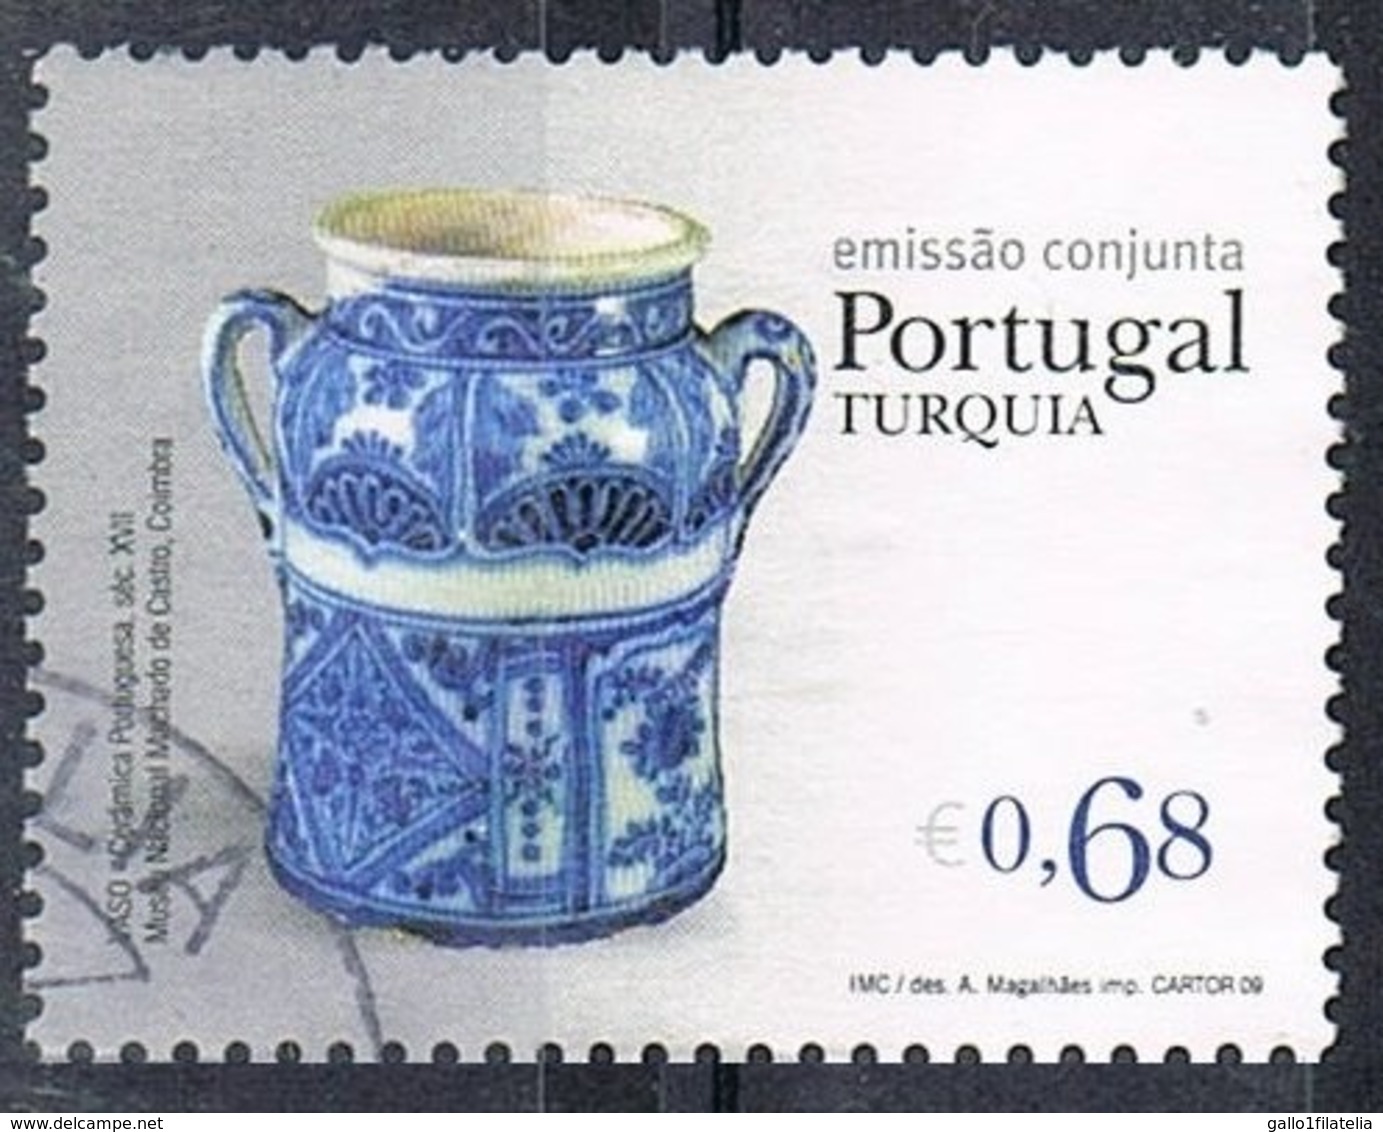 2009 - PORTOGALLO / PORTUGAL - ARTIGIANATO / CRAFT - JOINT ISSUE WITH TURKEY. USATO / USED. - Usati